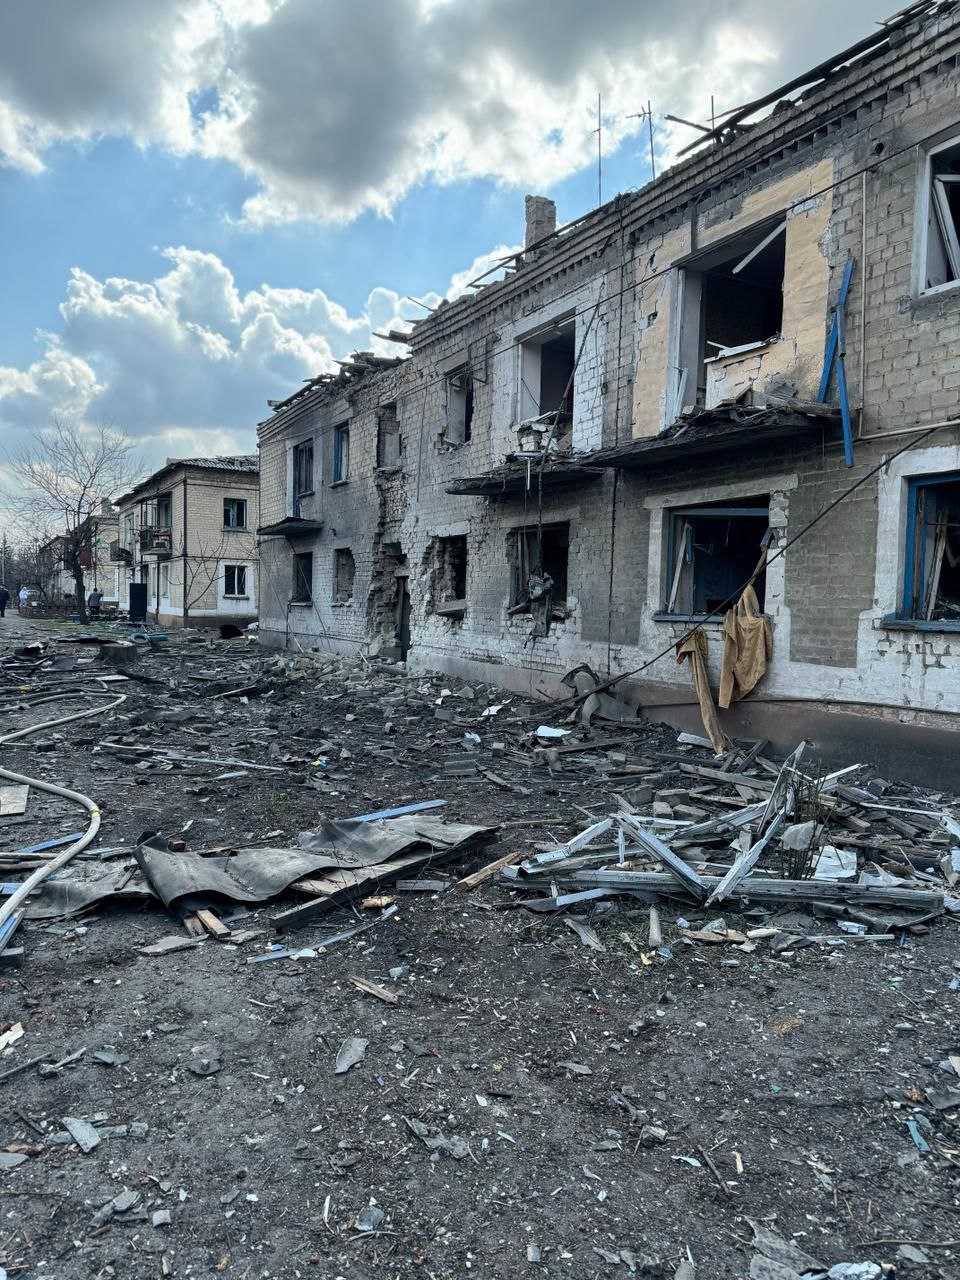 Российская армия обстреляла жилой квартал Украинская 27 марта: пострадали два человека 2